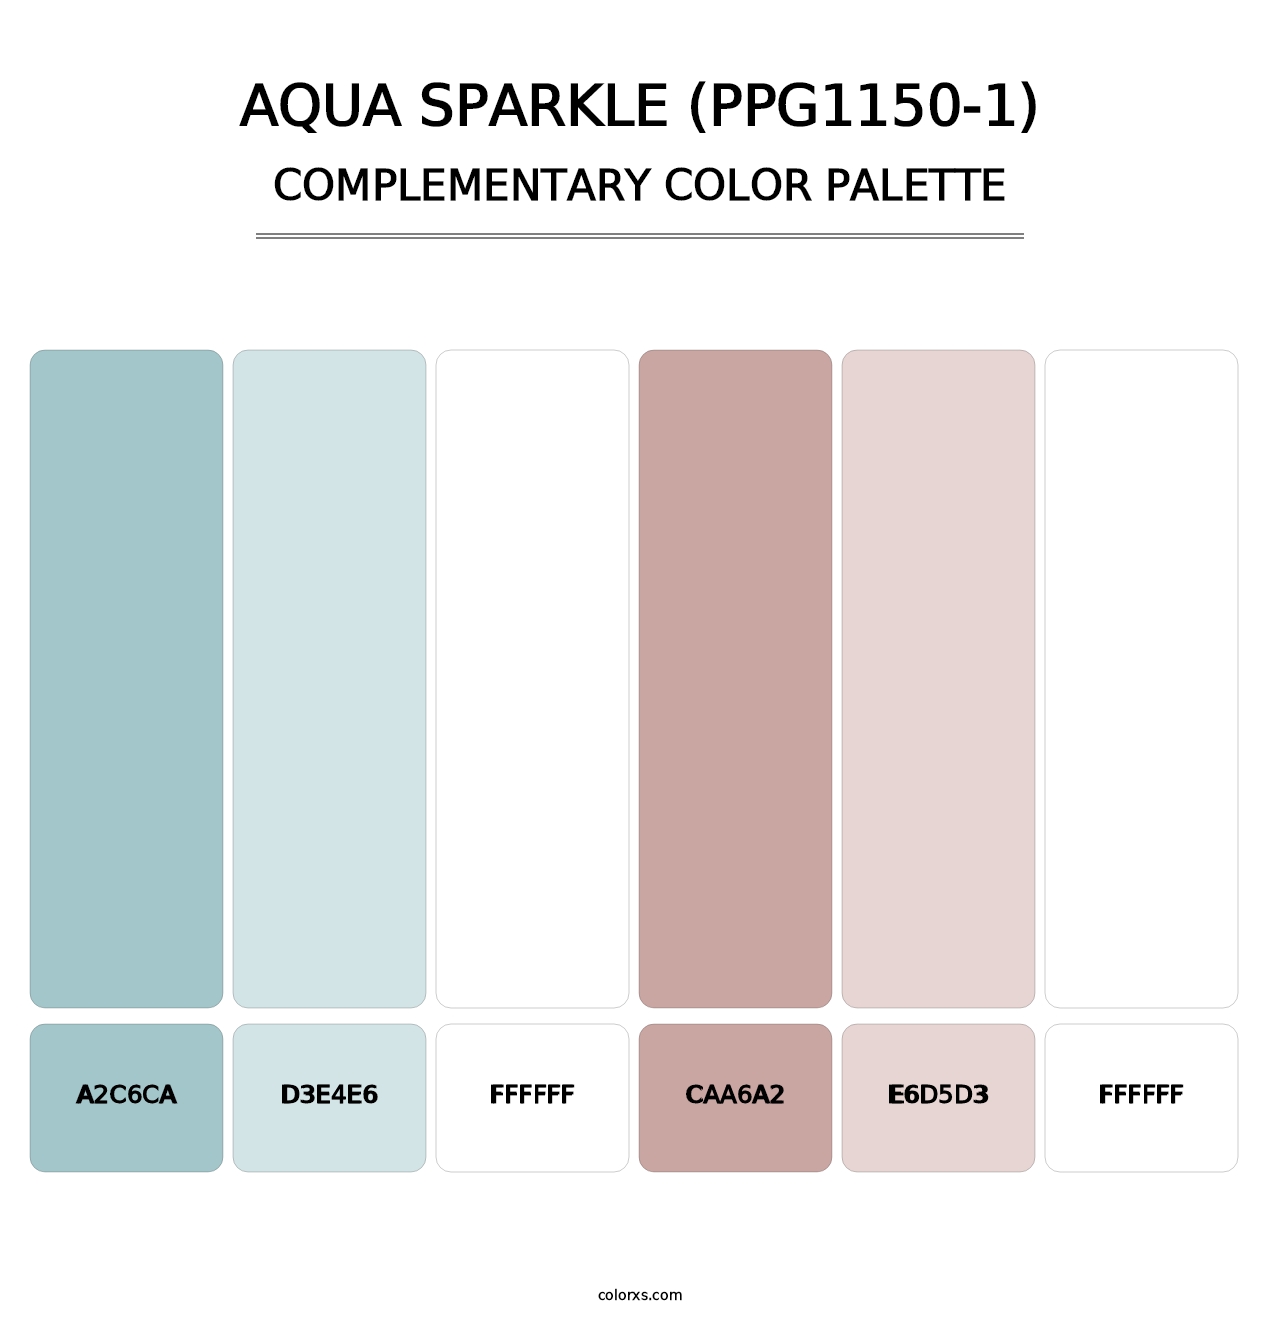 Aqua Sparkle (PPG1150-1) - Complementary Color Palette